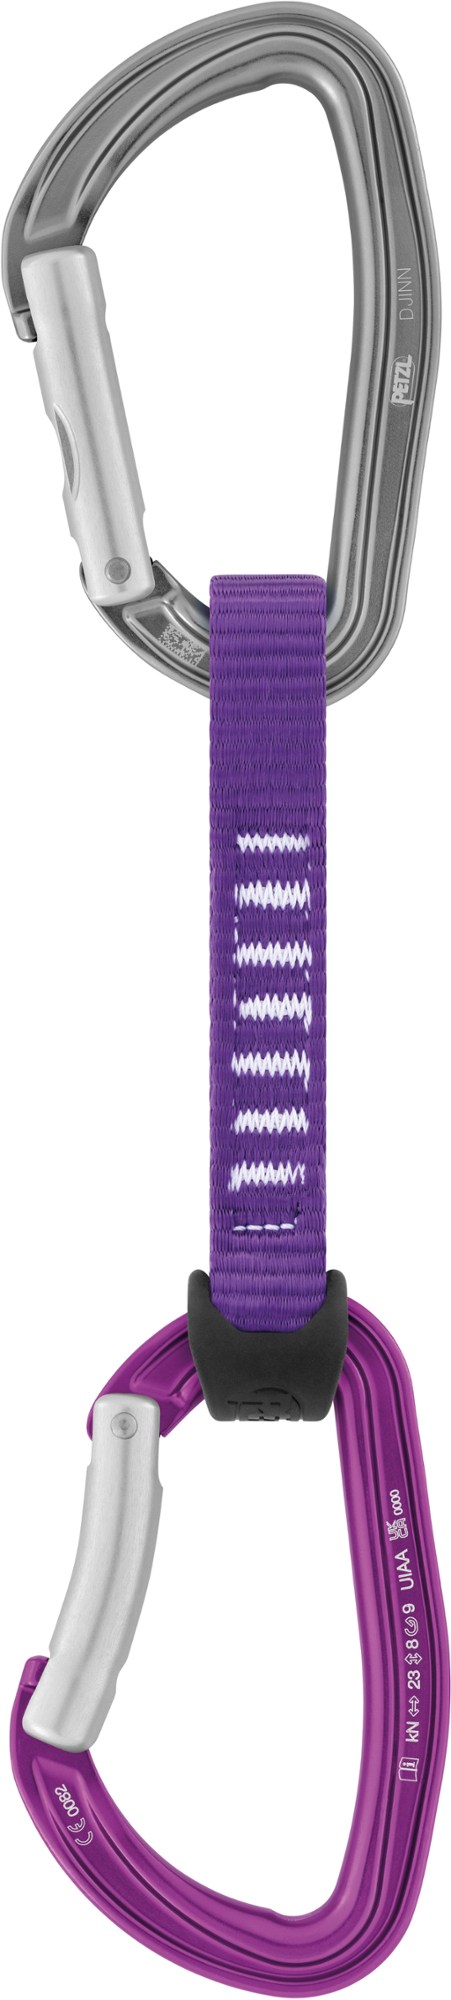 Джинн Аксесс Petzl, фиолетовый оттяжка petzl 12 см